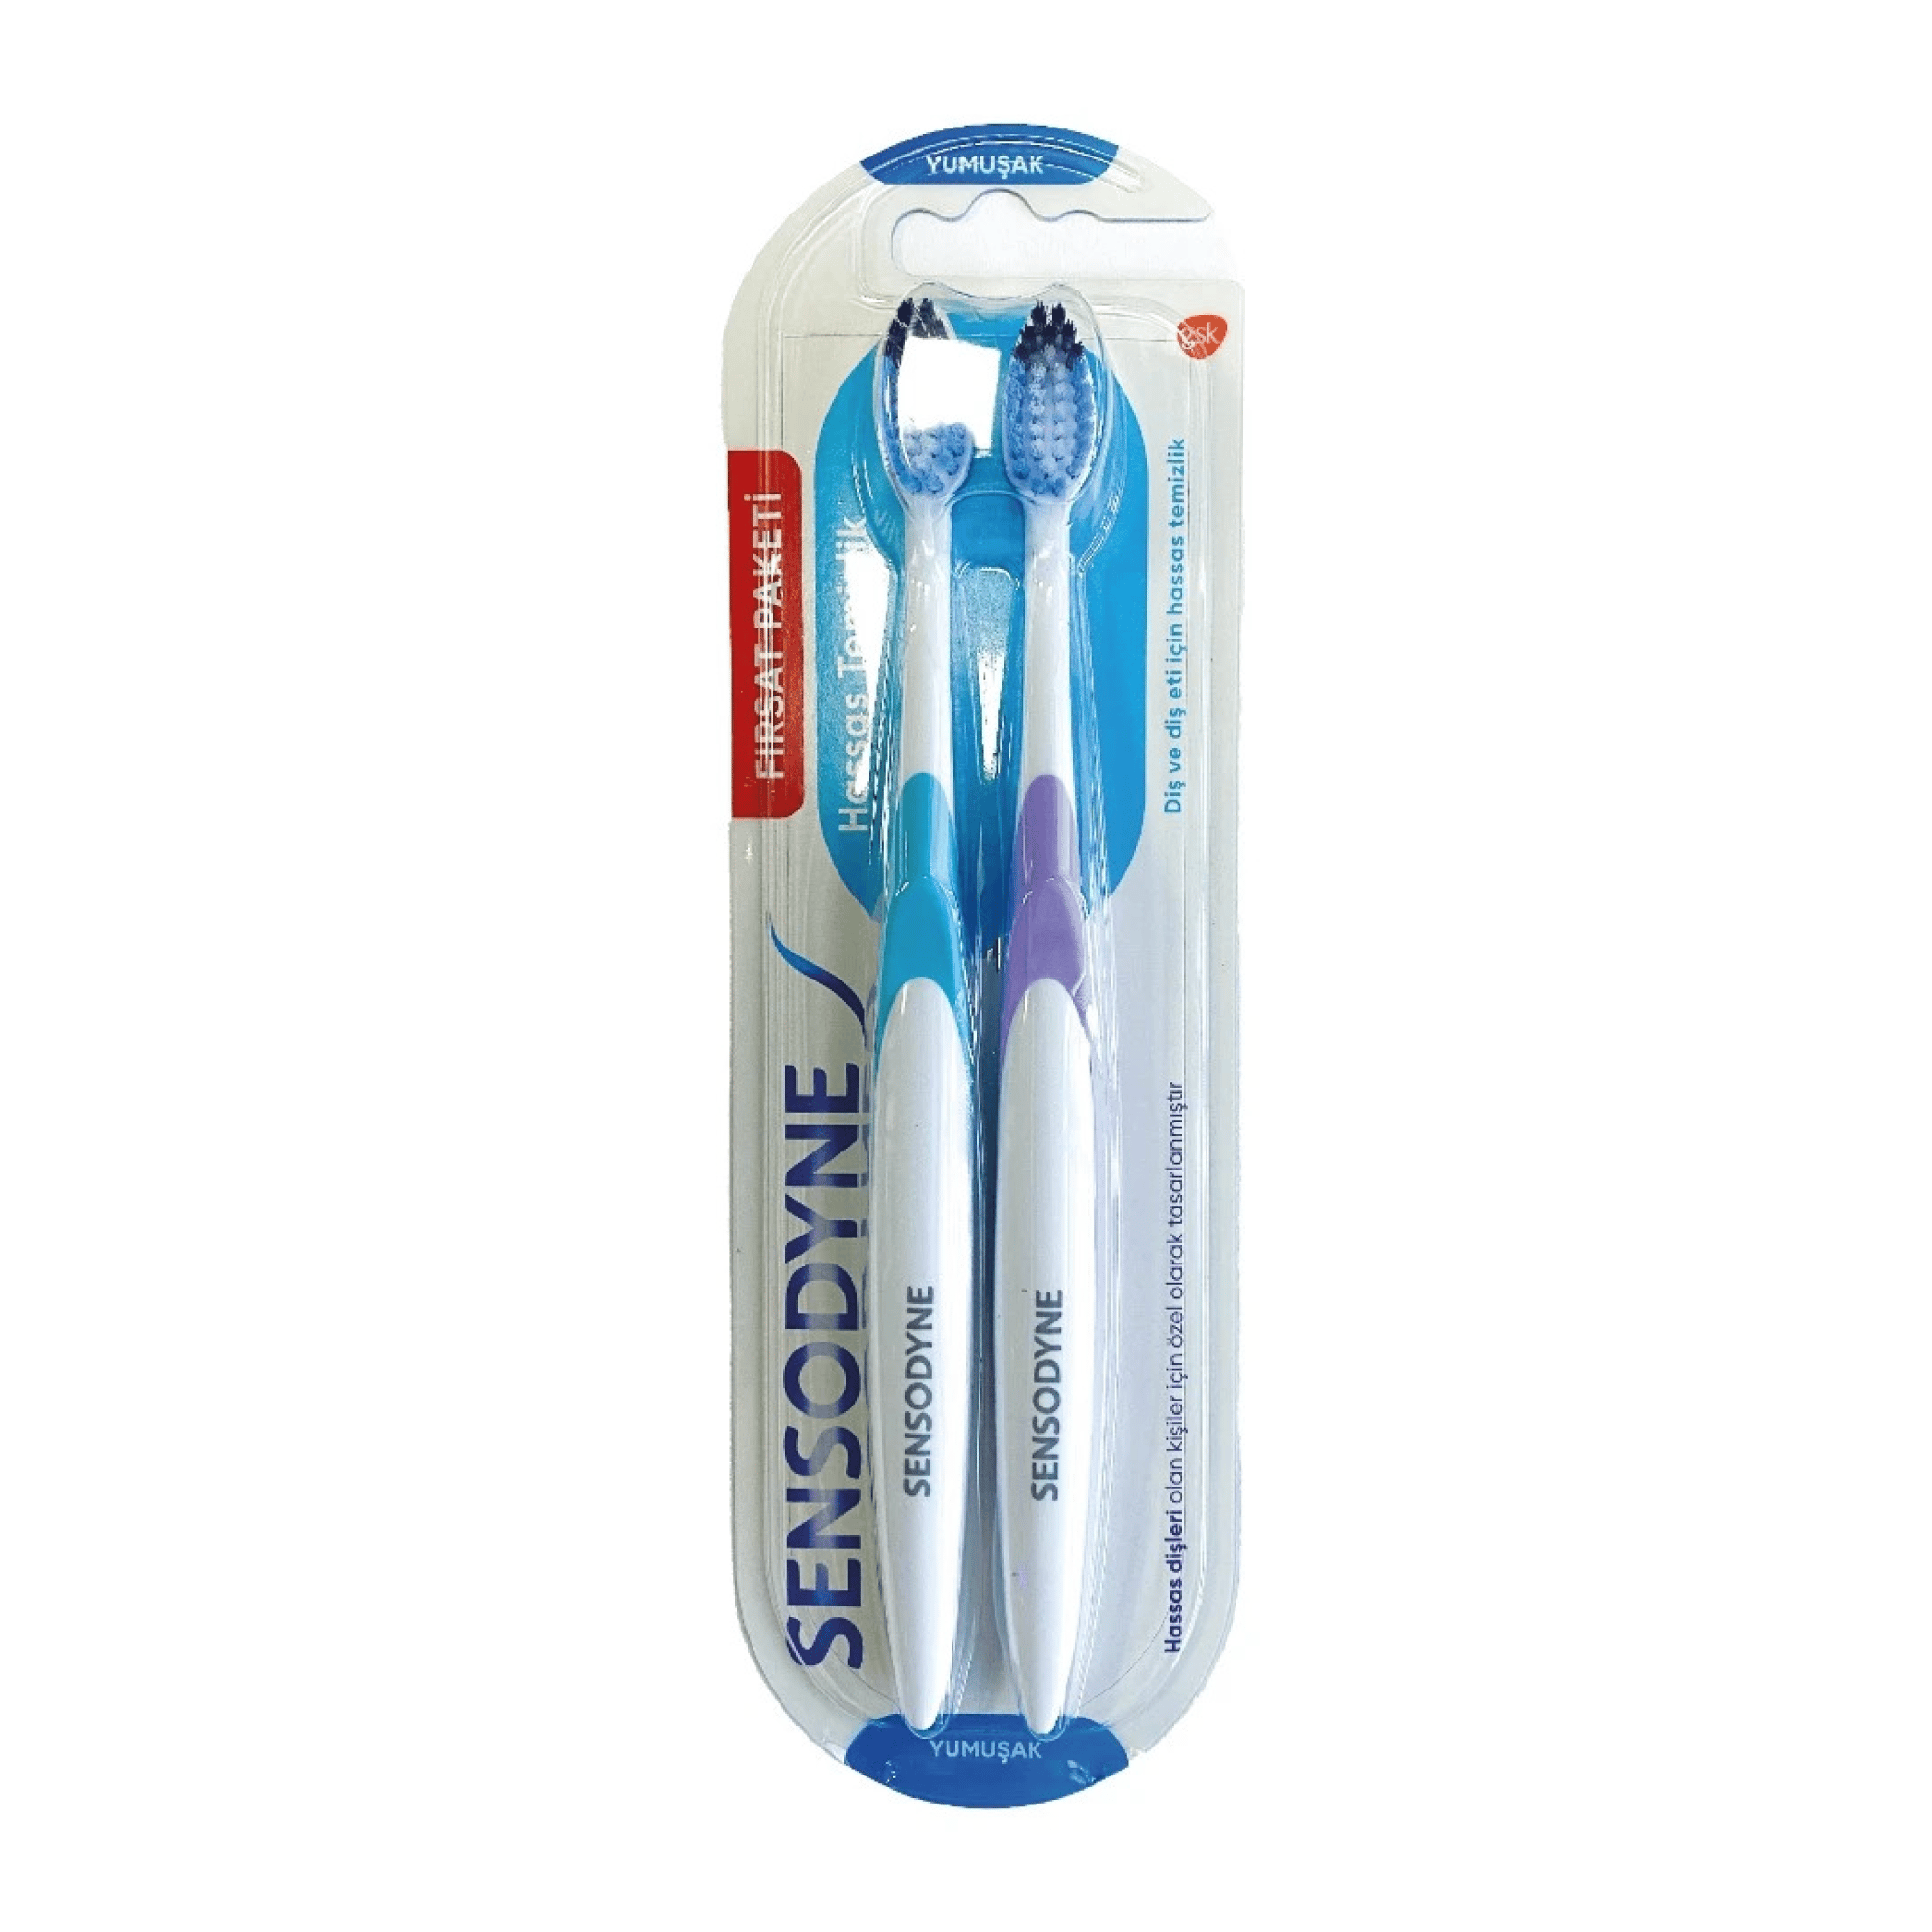 Sensodyne Hassas Temizlik Diş Fırçası 2'li Yumuşak - Platin